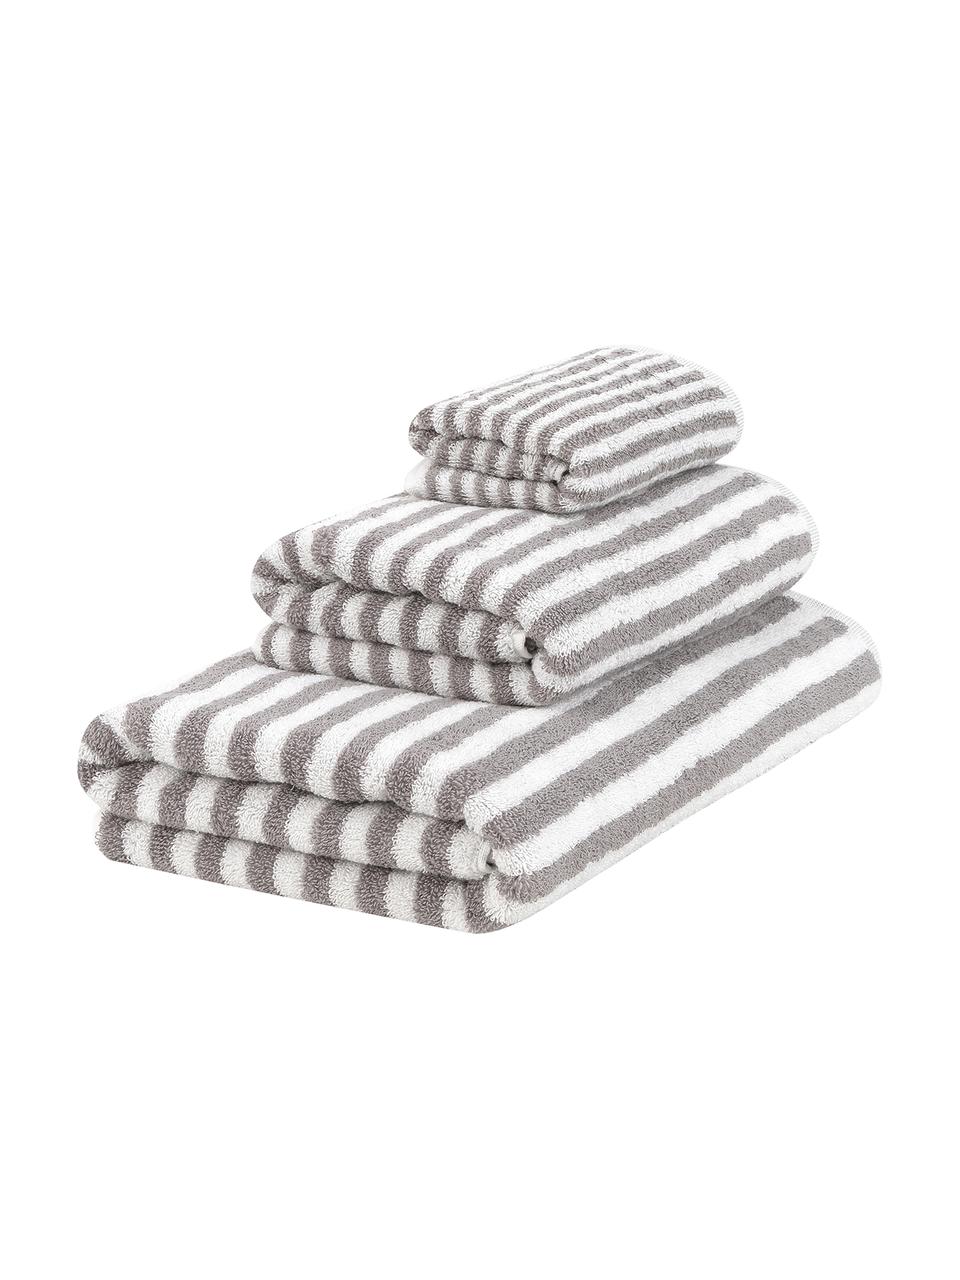 Set de toallas a rayas Viola, 3 uds., Gris, blanco, Set de diferentes tamaños